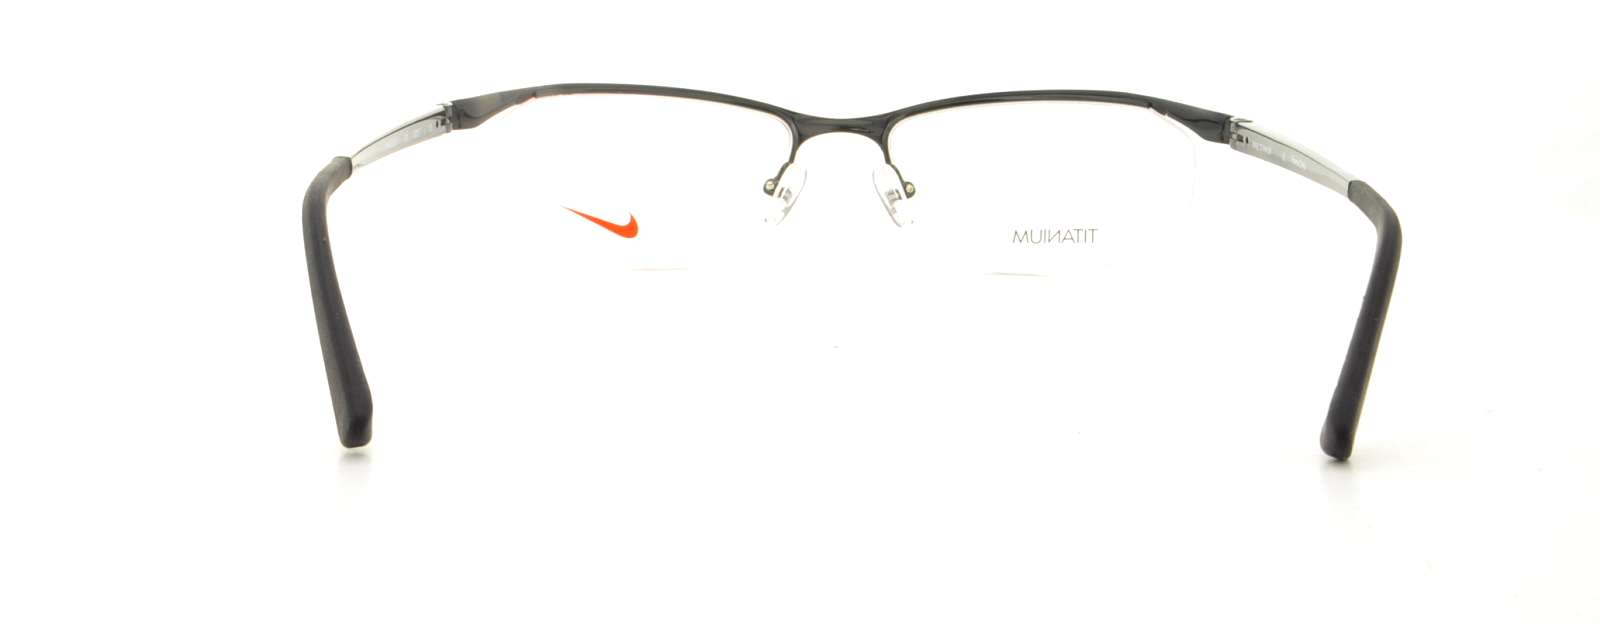 Padre fage Aclarar antiguo Designer Frames Outlet. Nike Eyeglasses 6037